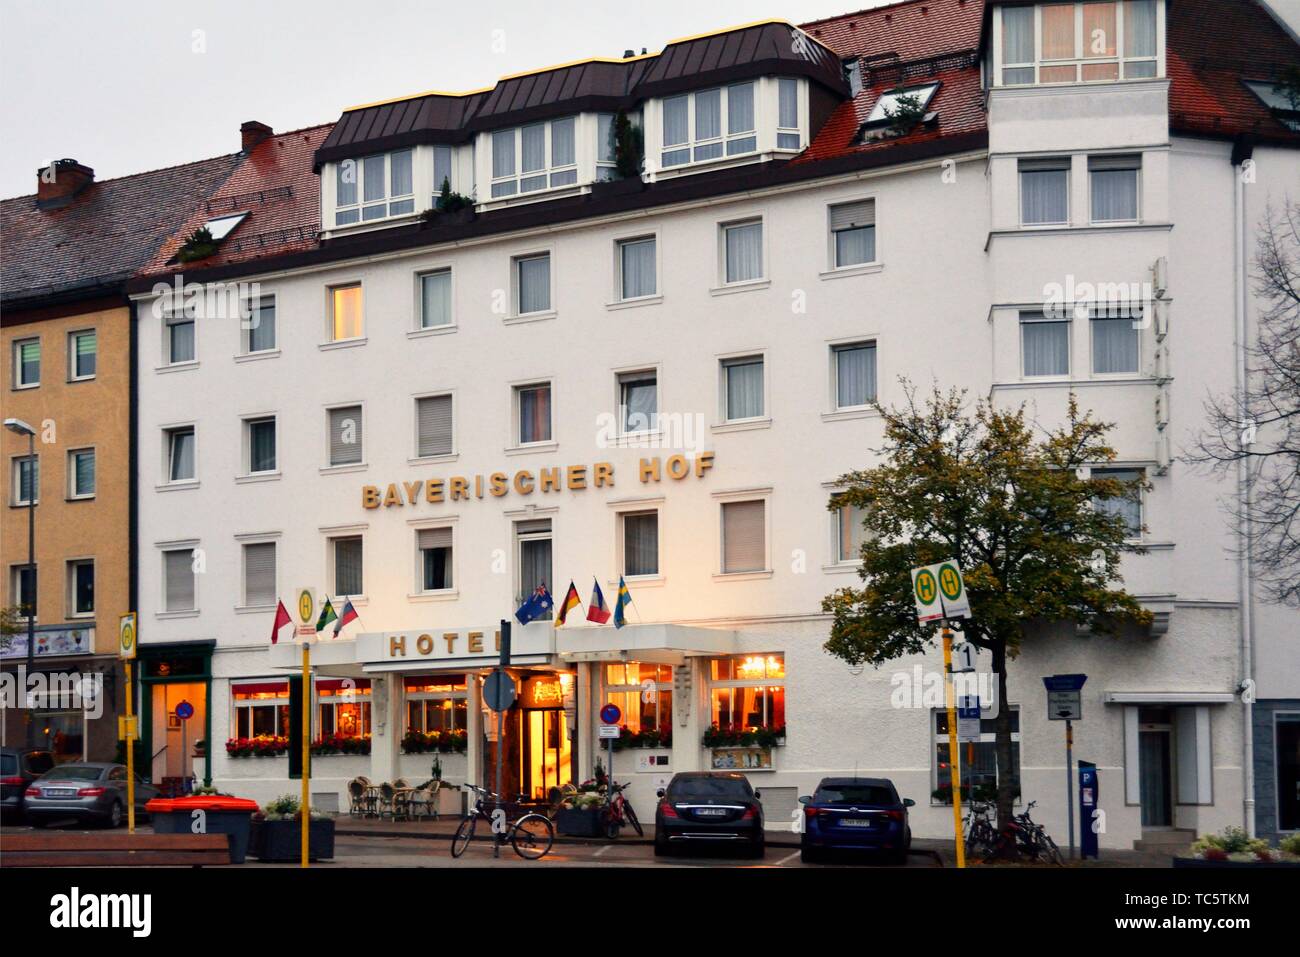 Bayerischer Hotel in der Nähe der Hauptbahnhof Bayreuth Hbf - Hauptbahnhof, Bayreuth, Oberfranken, Bayern, Bayern, Deutschland, Europa Stockfoto